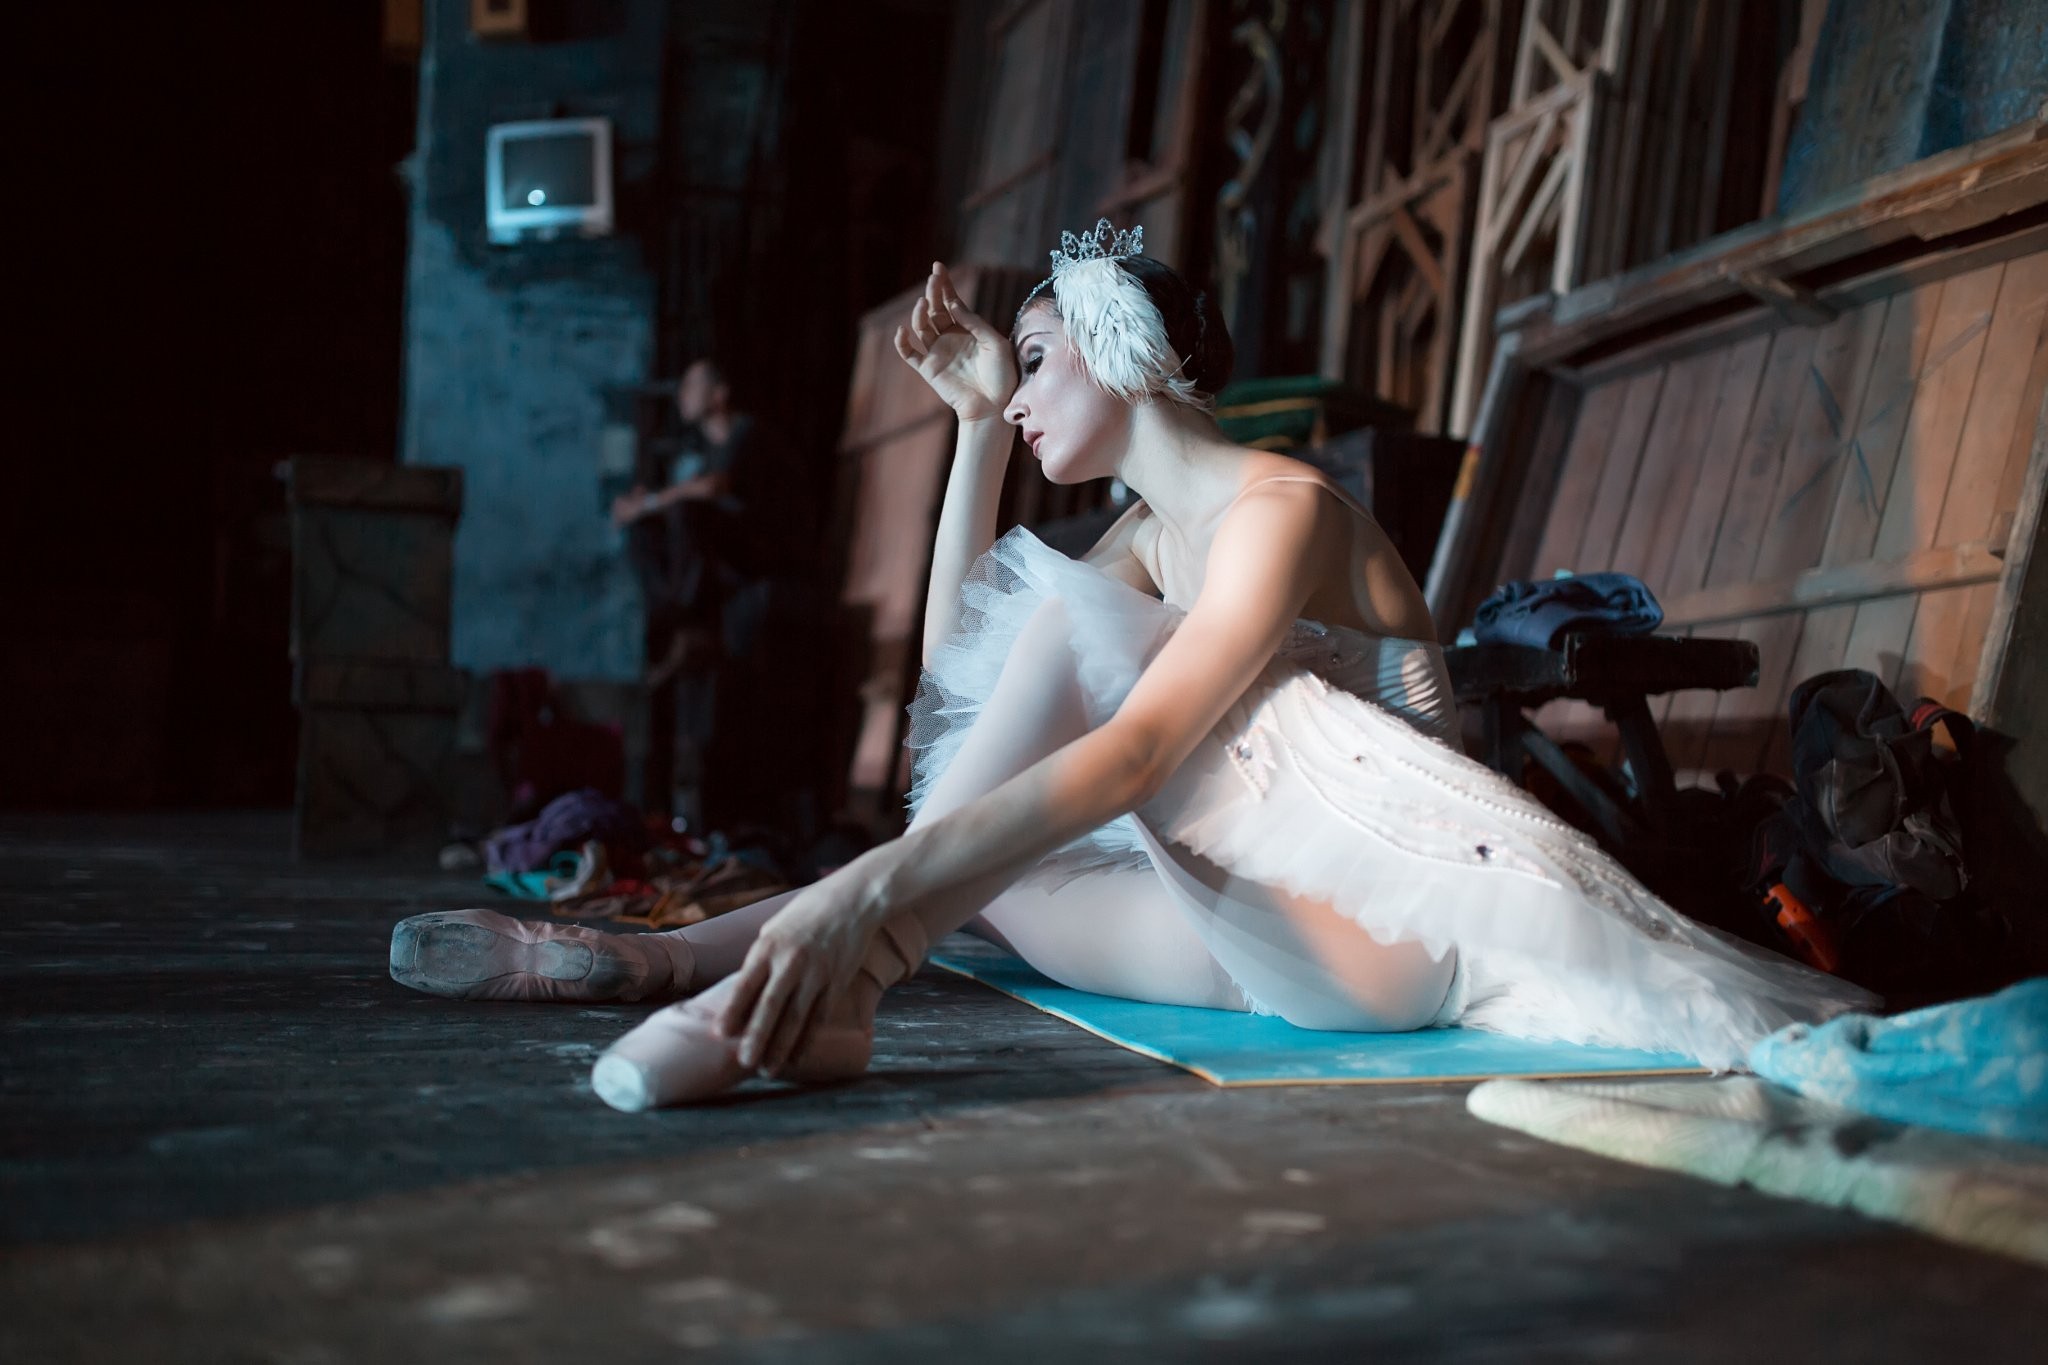 Women Model Brunette Long Hair Ballerina White Dress Sitting On The Floor Wood Men Feathers Rest Bar 2048x1365